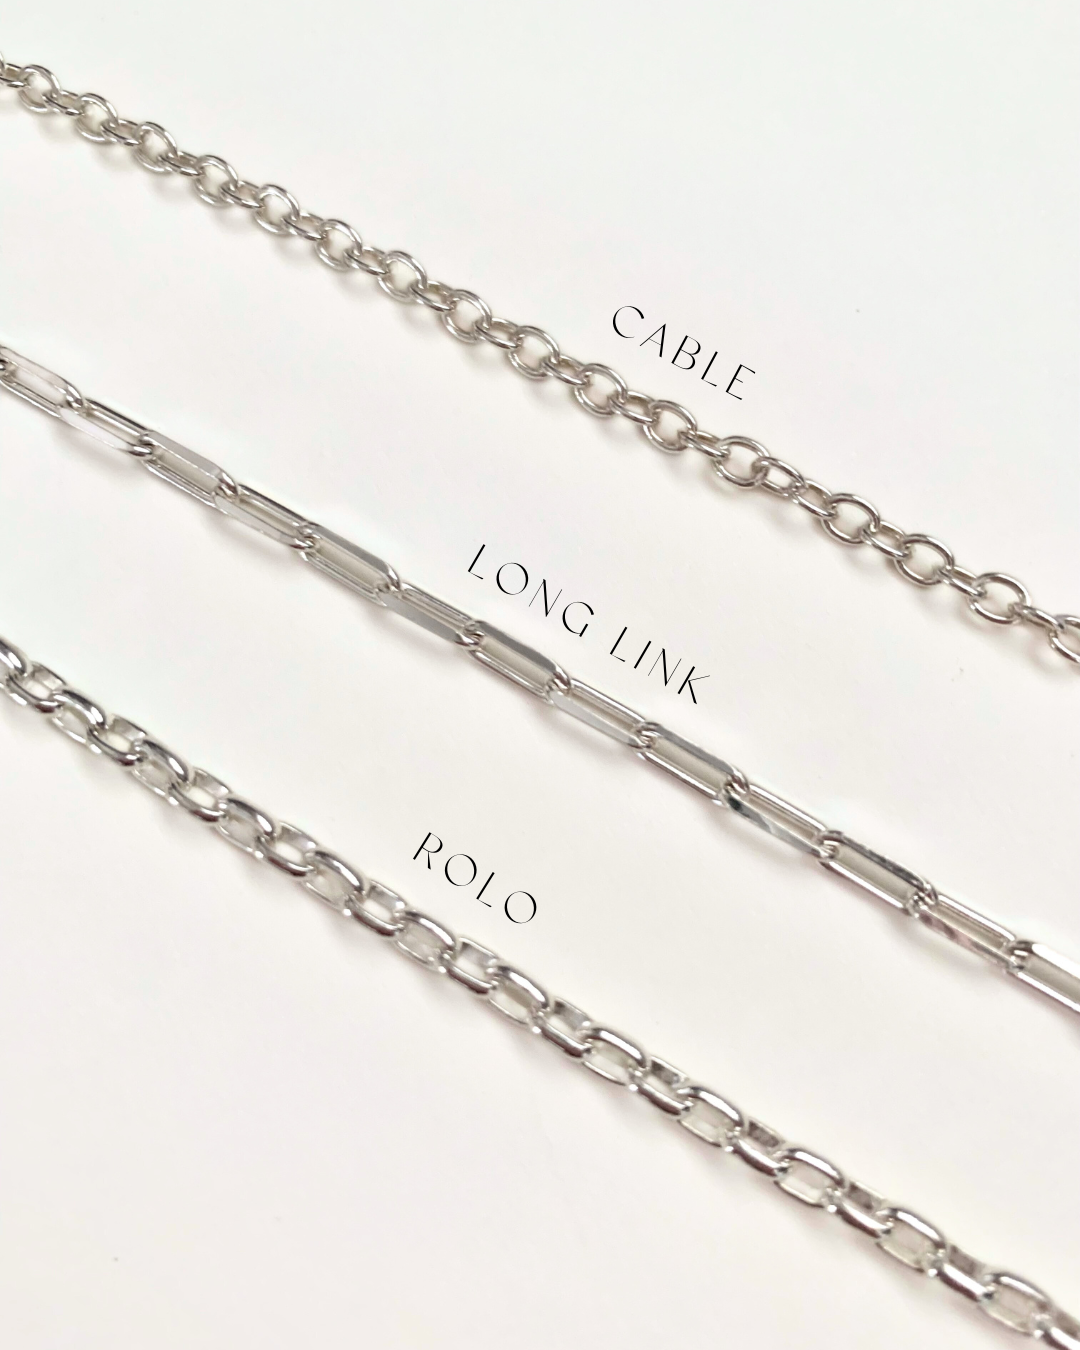 rose quartz bracelet / pendulum